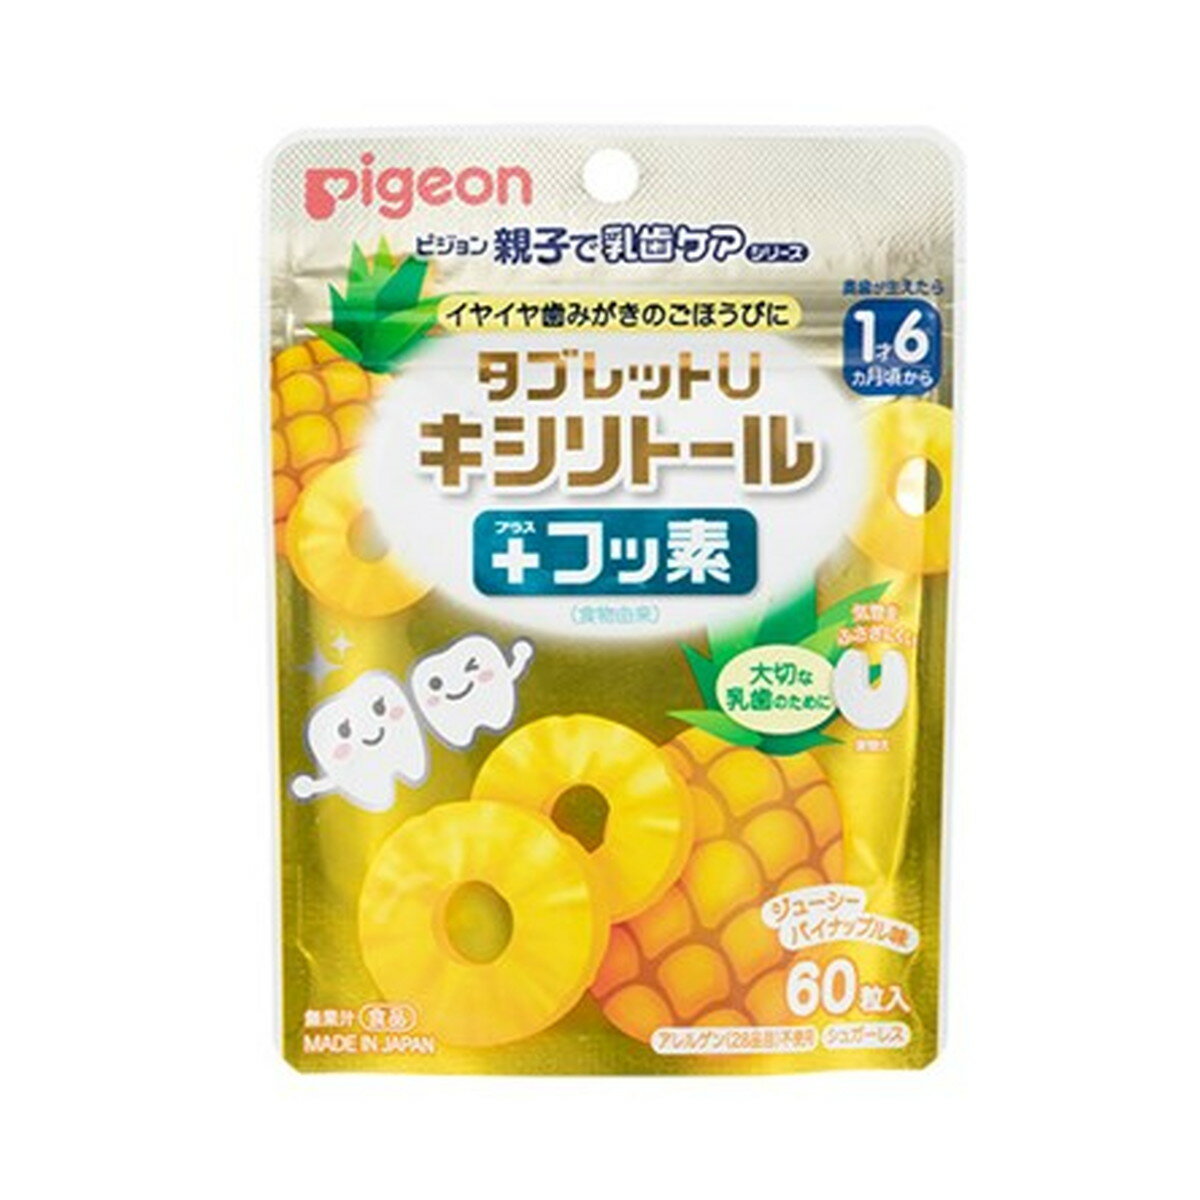 【×6袋セットメール便送料込】ピジョン タブレットU キシリトール + フッ素 ジューシーパイナップル味 60粒入